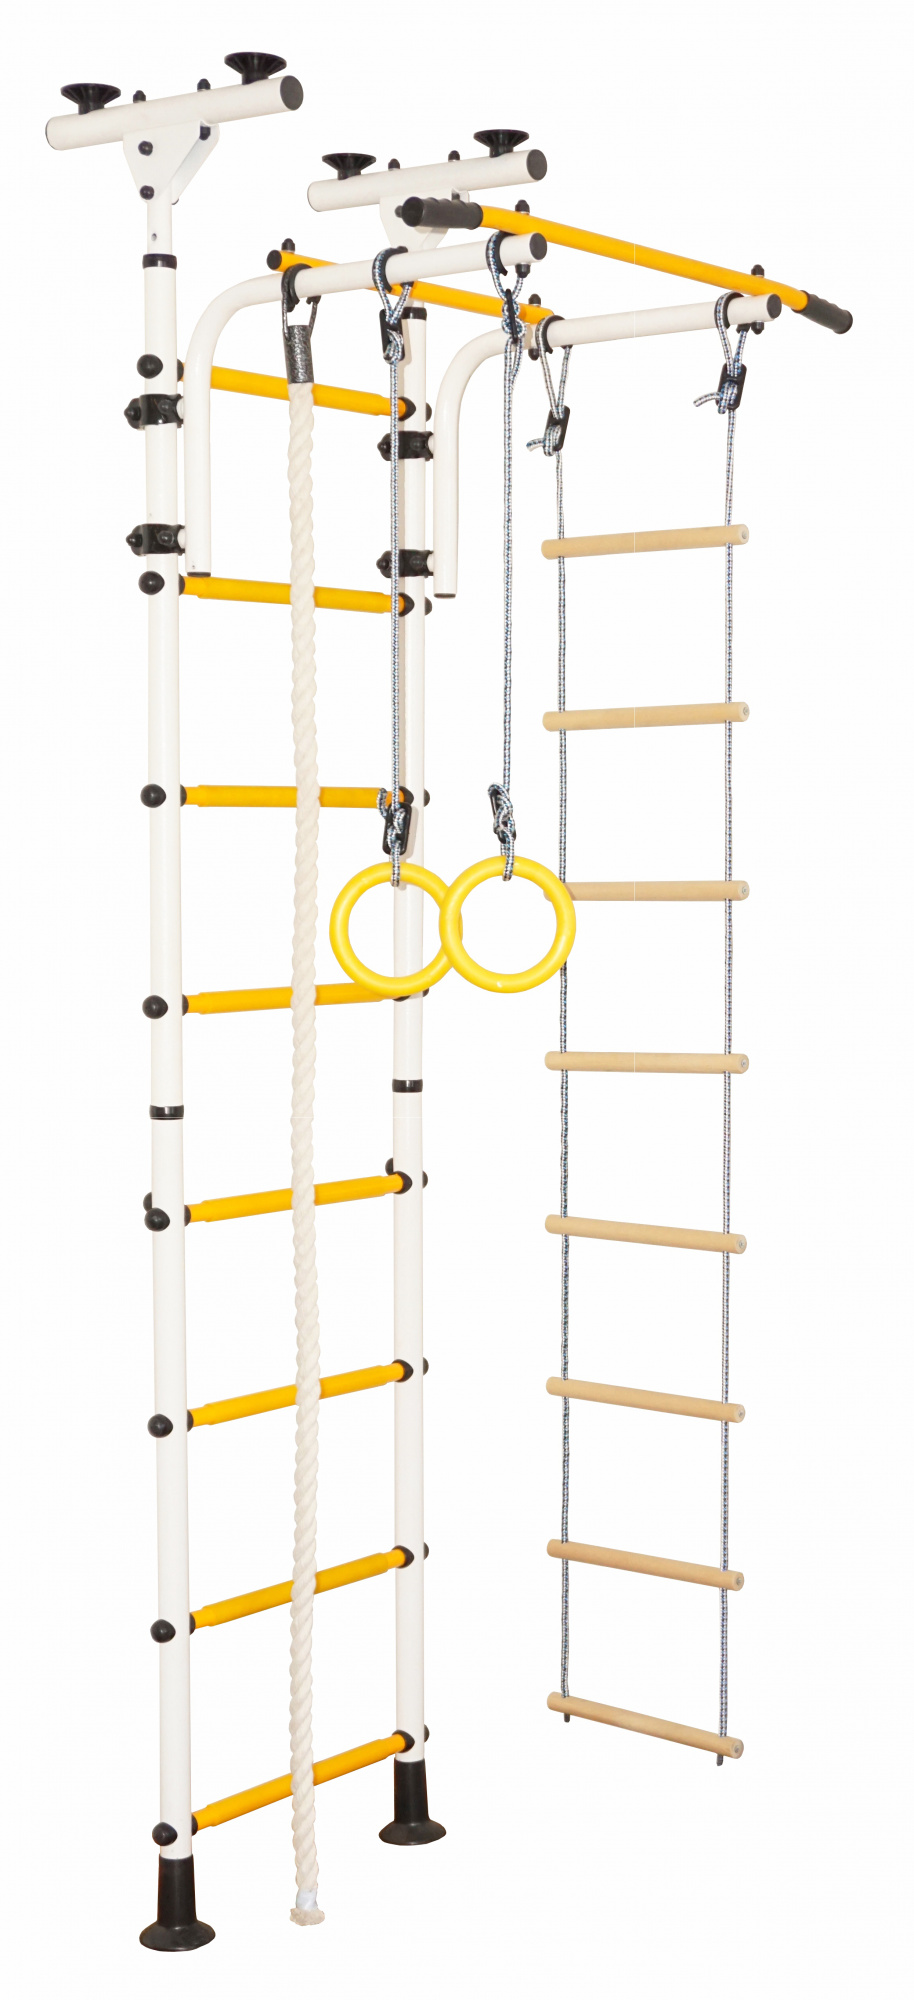 Шведская стенка ДСК Распорный, белый, желтый турник навесной на гимнастическую стенку spektr sport джет 2 белый